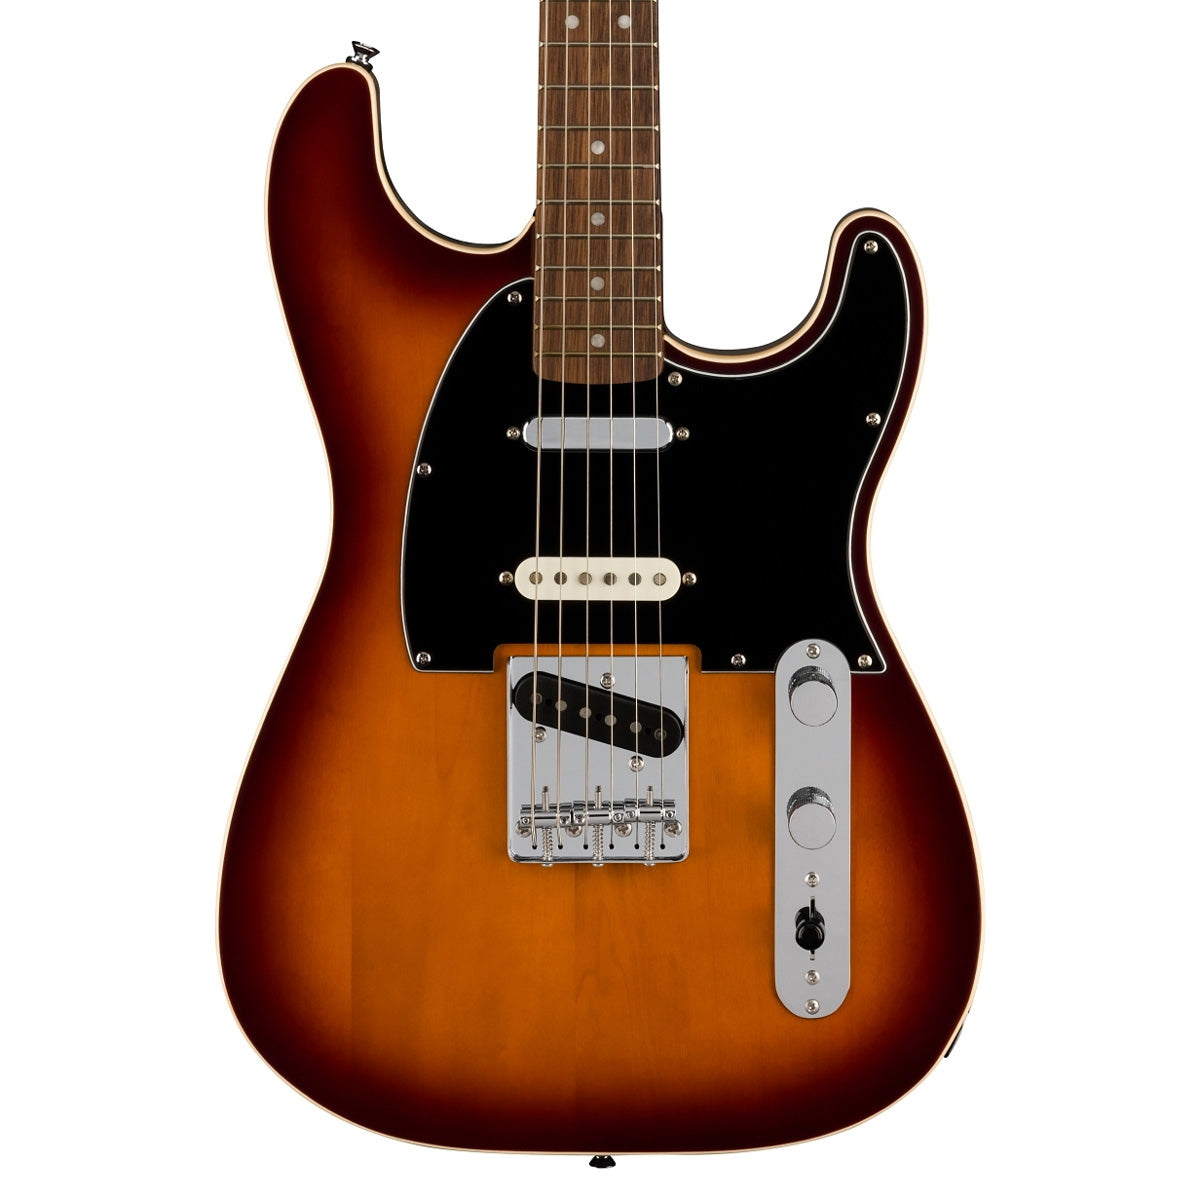 Fender Squier Paranormal Custom Nashville Stratocaster - Laurel Fingerboard - Black Pickguard - Chocolate 2-Color Sunburst